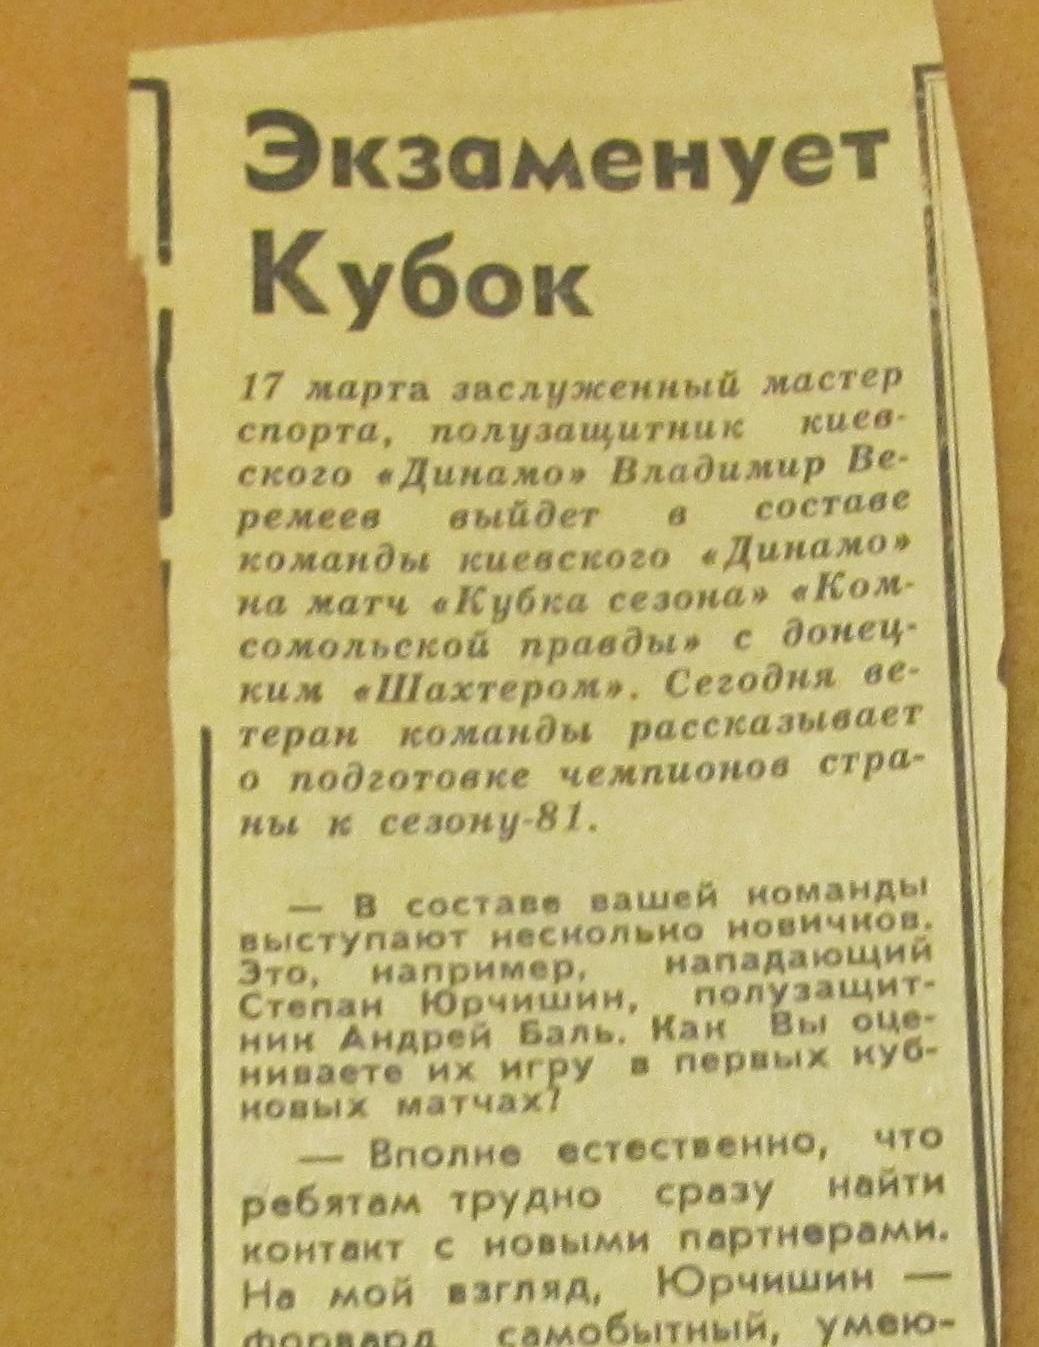 интервью В.Веремеева Динамо Киев перед матчем Кубка сезона 1981